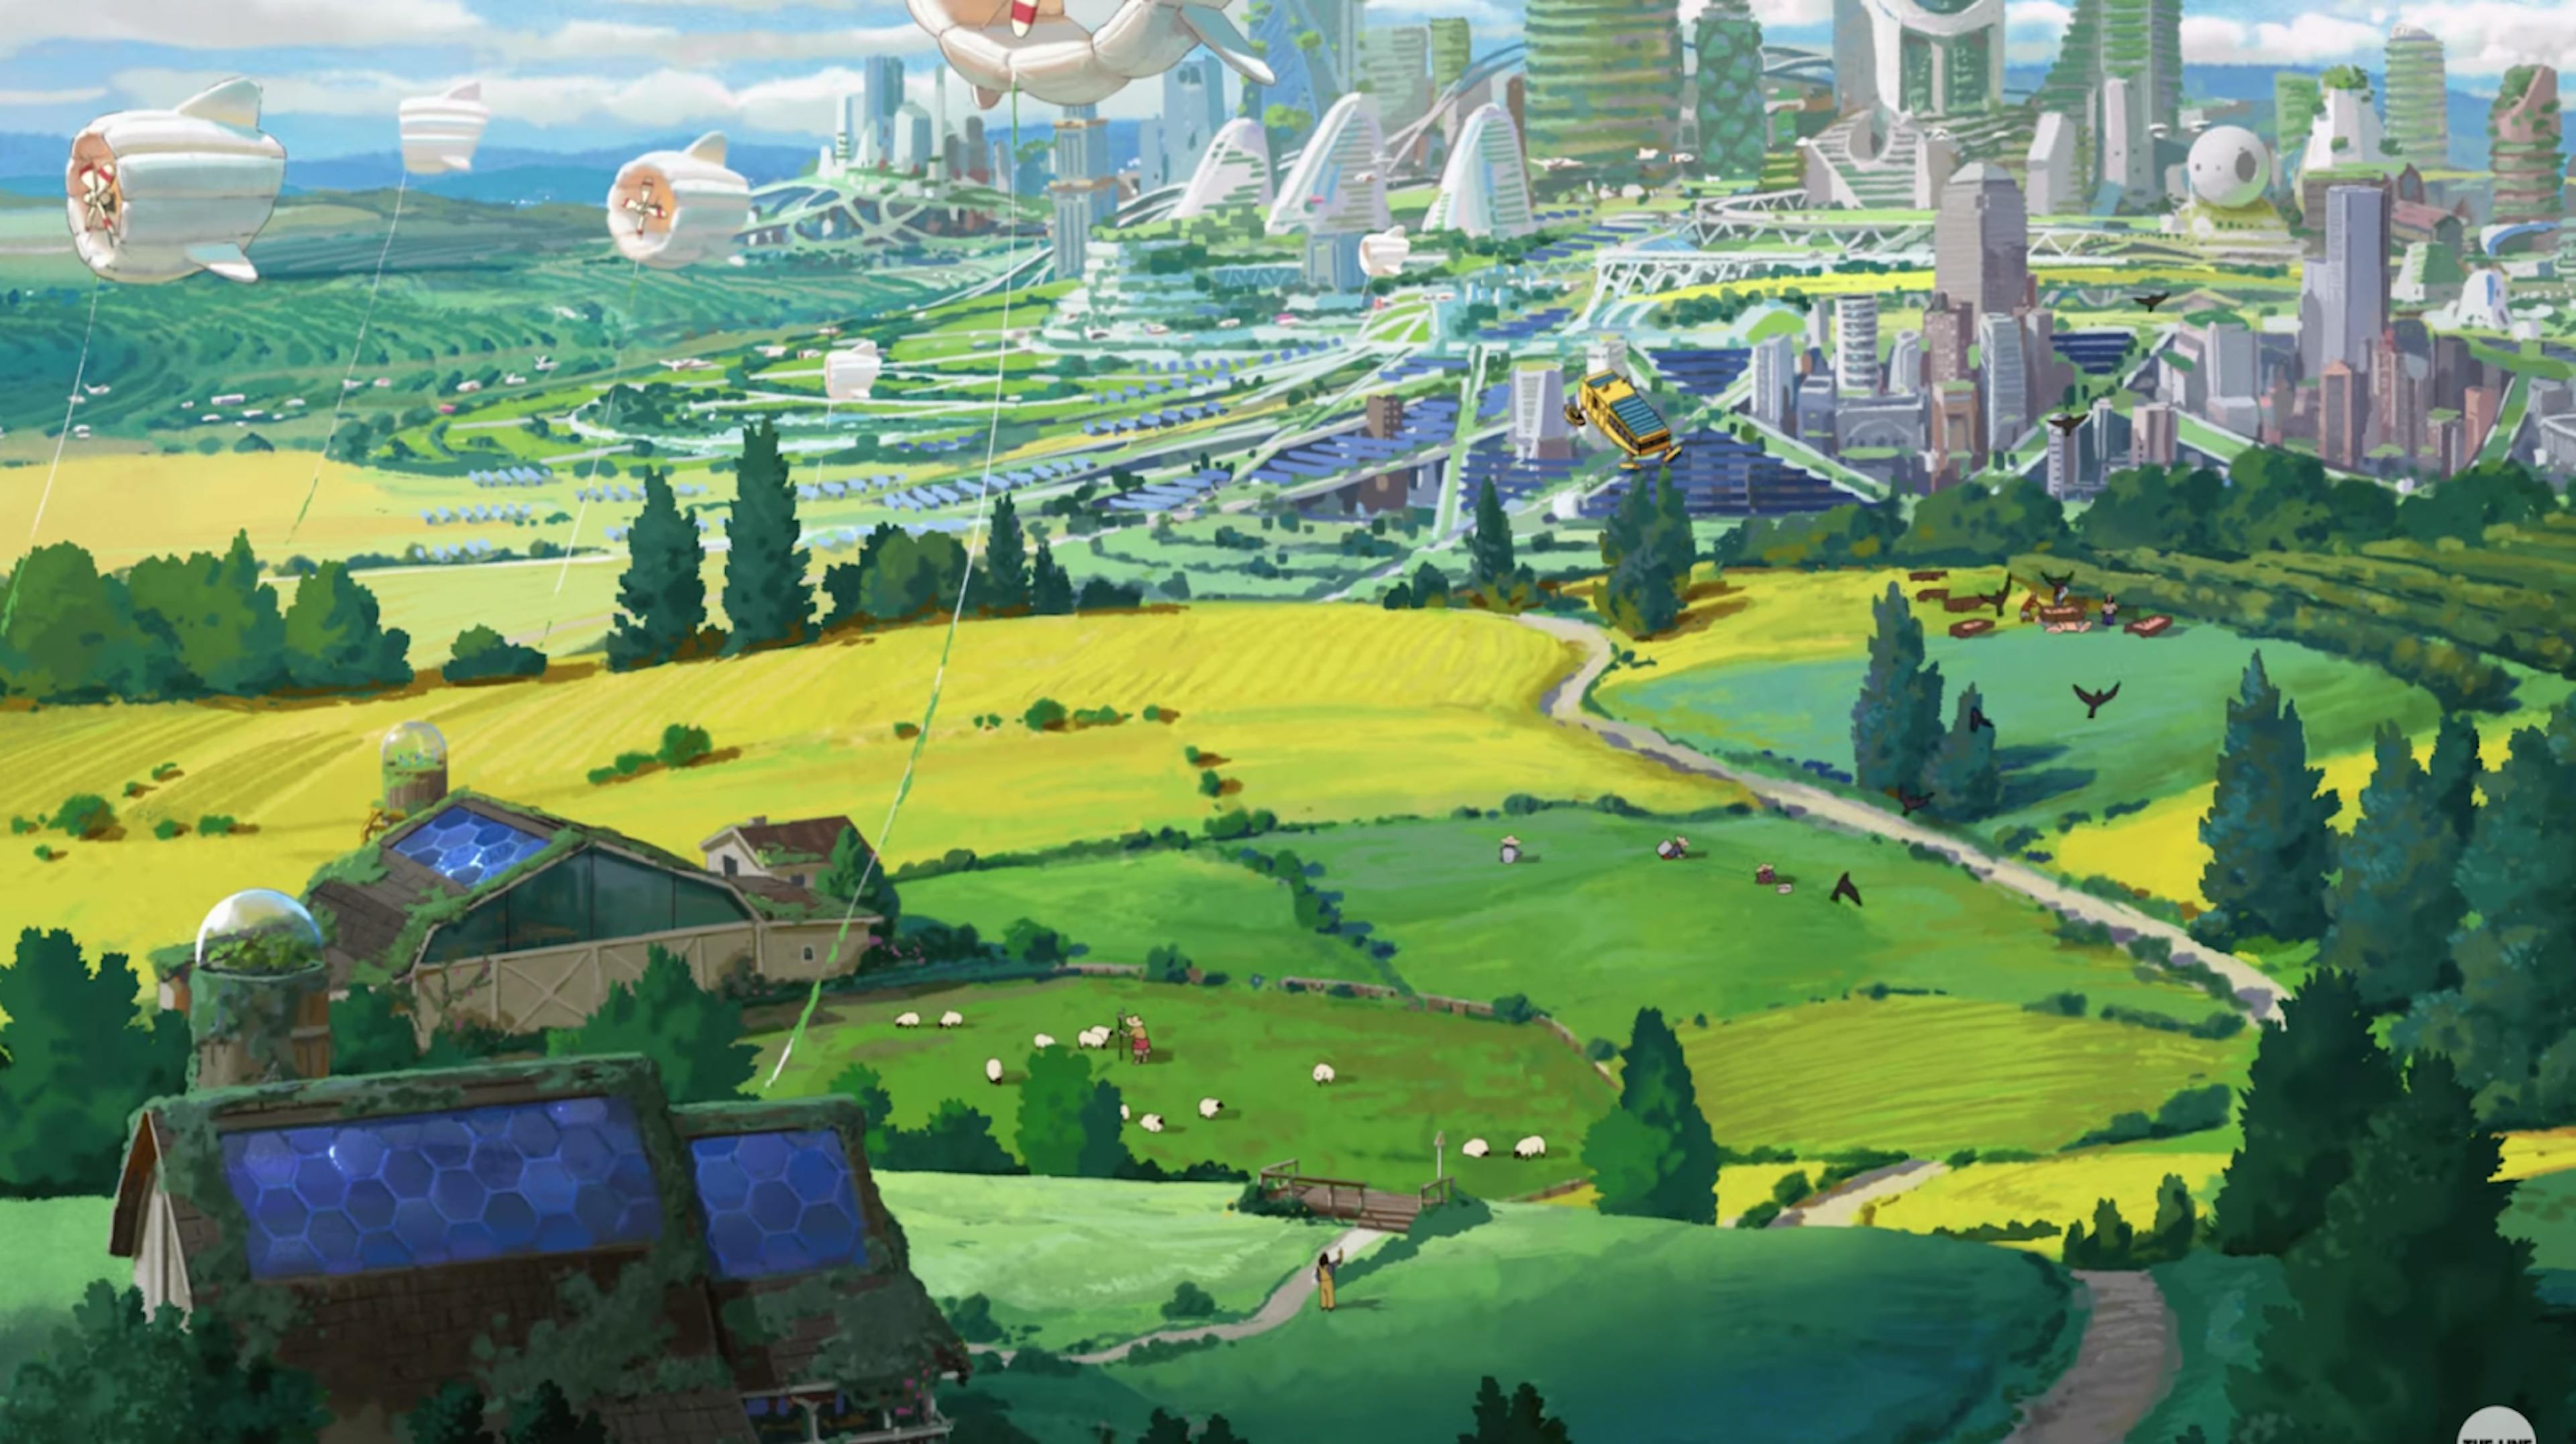 Ein Standbild aus dem Chobani-Anime-Werbespot Dear Alice von The Line; mit einer Solarpunk-Zukunft und einer Partitur eines Ghibli-Komponisten. Verfügbar unter https://www.youtube.com/watch?v=z-Ng5ZvrDm4.